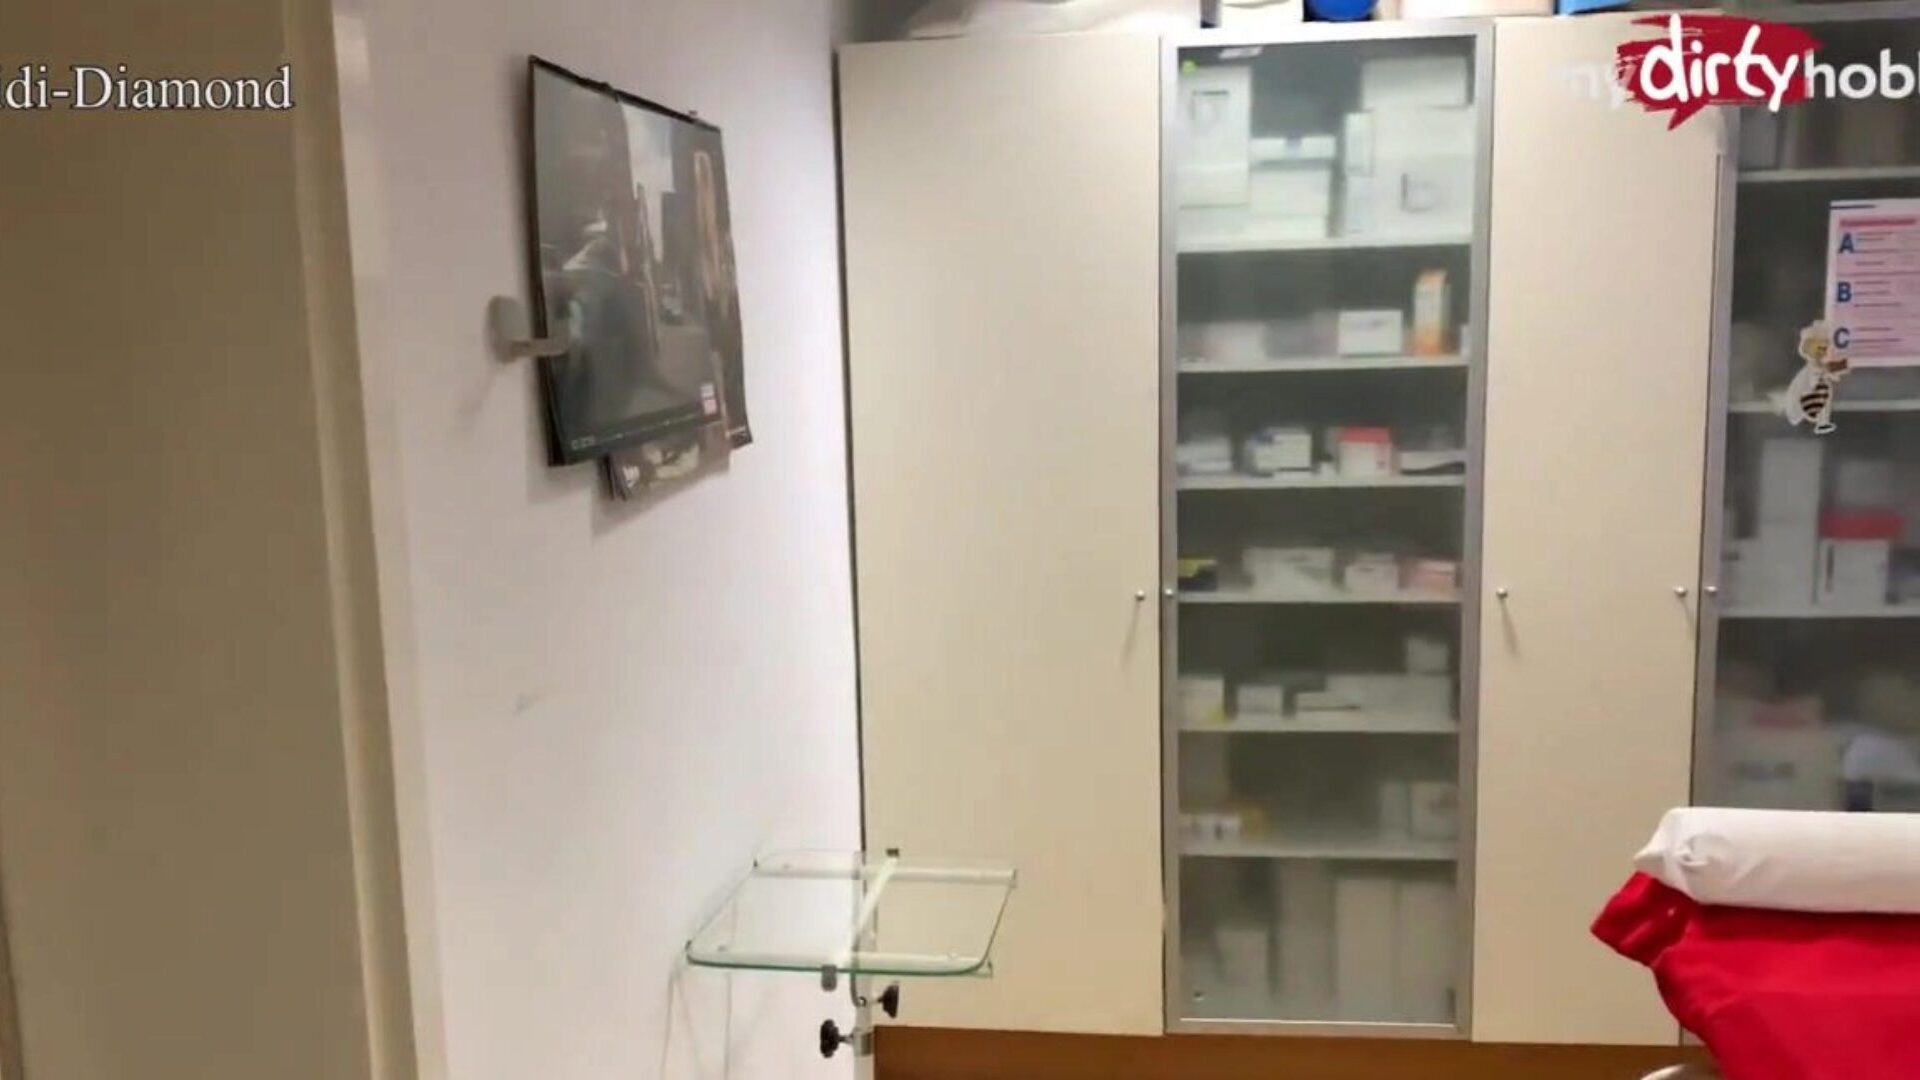 мидиртихобби - доктор током прегледа прегледа бонки плавушу